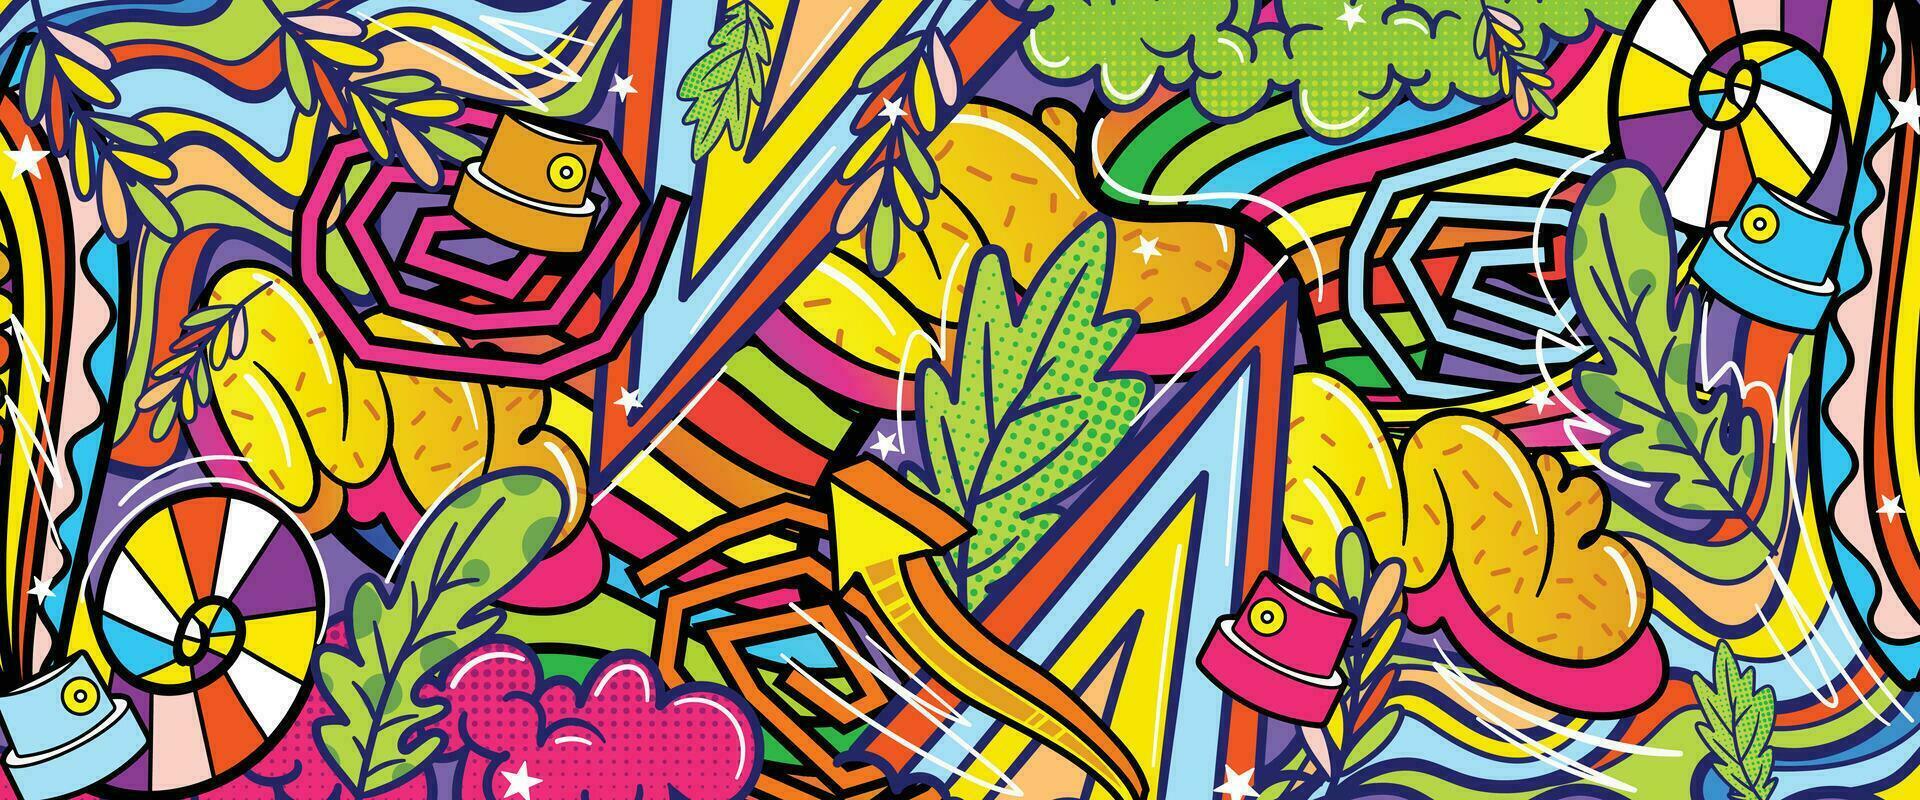 grafite rabisco arte fundo com vibrante cores desenhado à mão estilo. rua arte grafite urbano tema para impressões, bandeiras, e têxteis dentro vetor formato